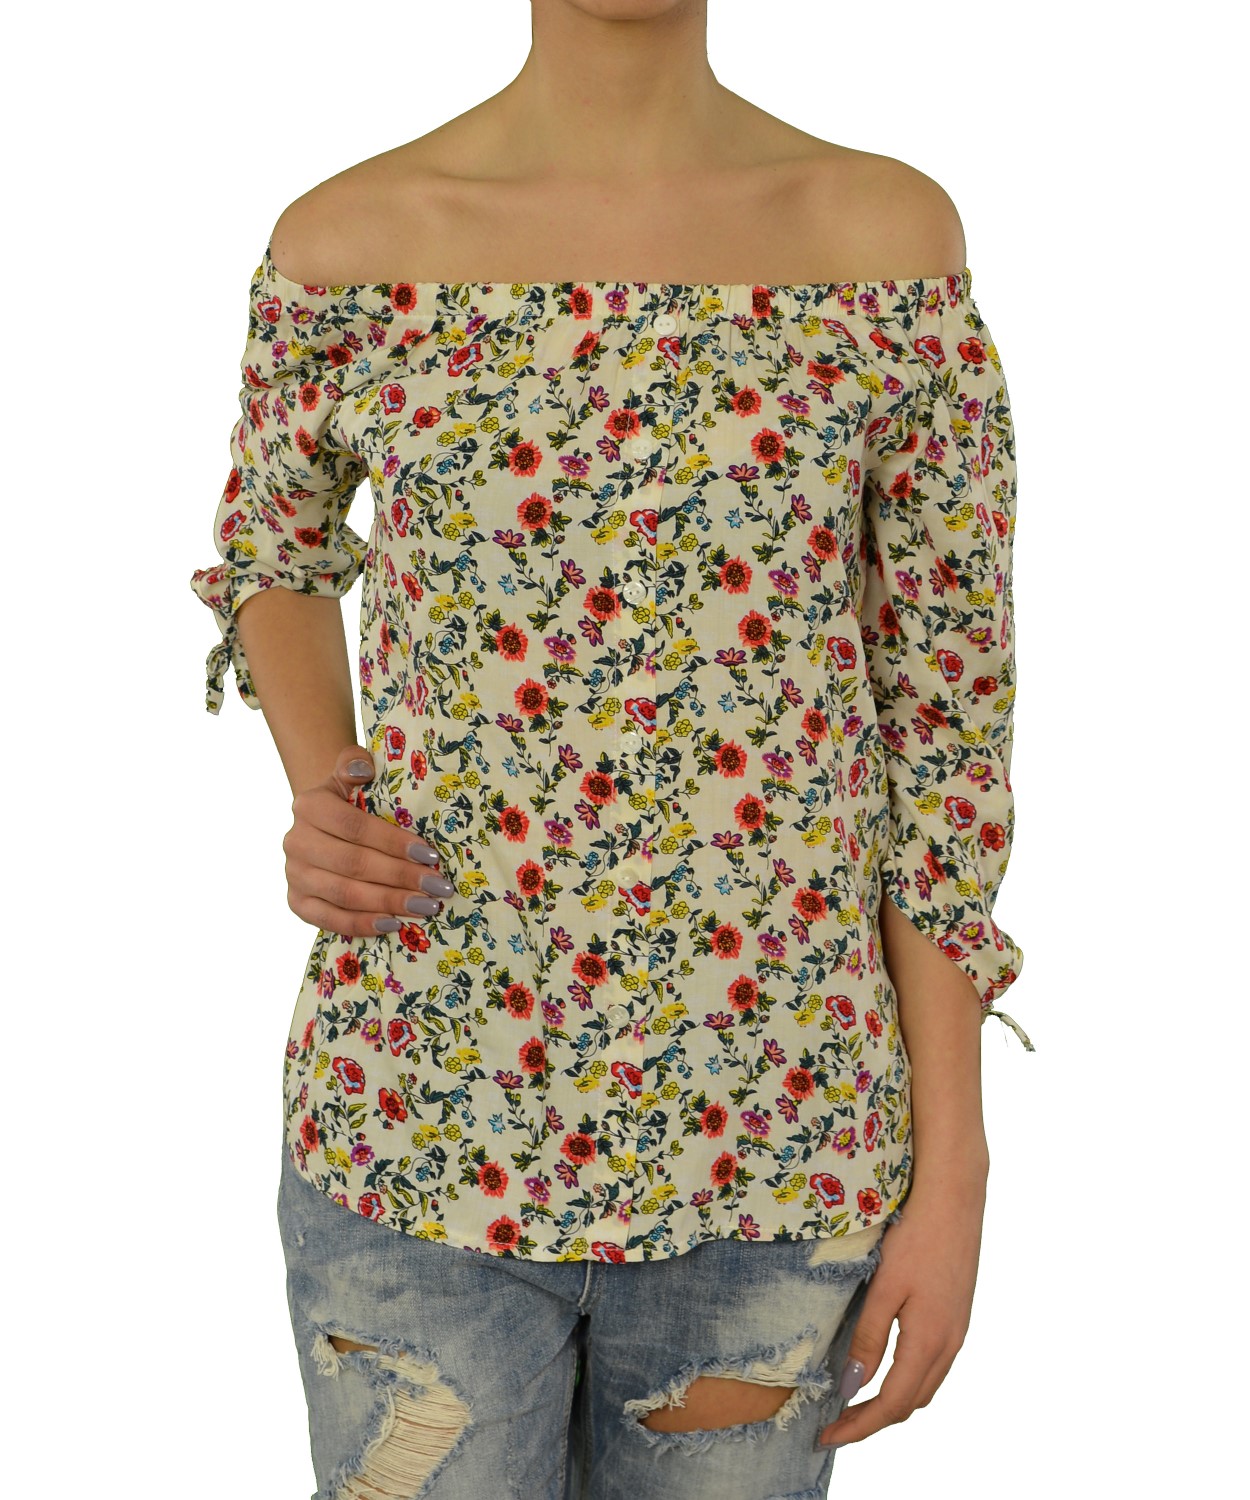 Γυναικεία μπλούζα μπεζ floral 230371